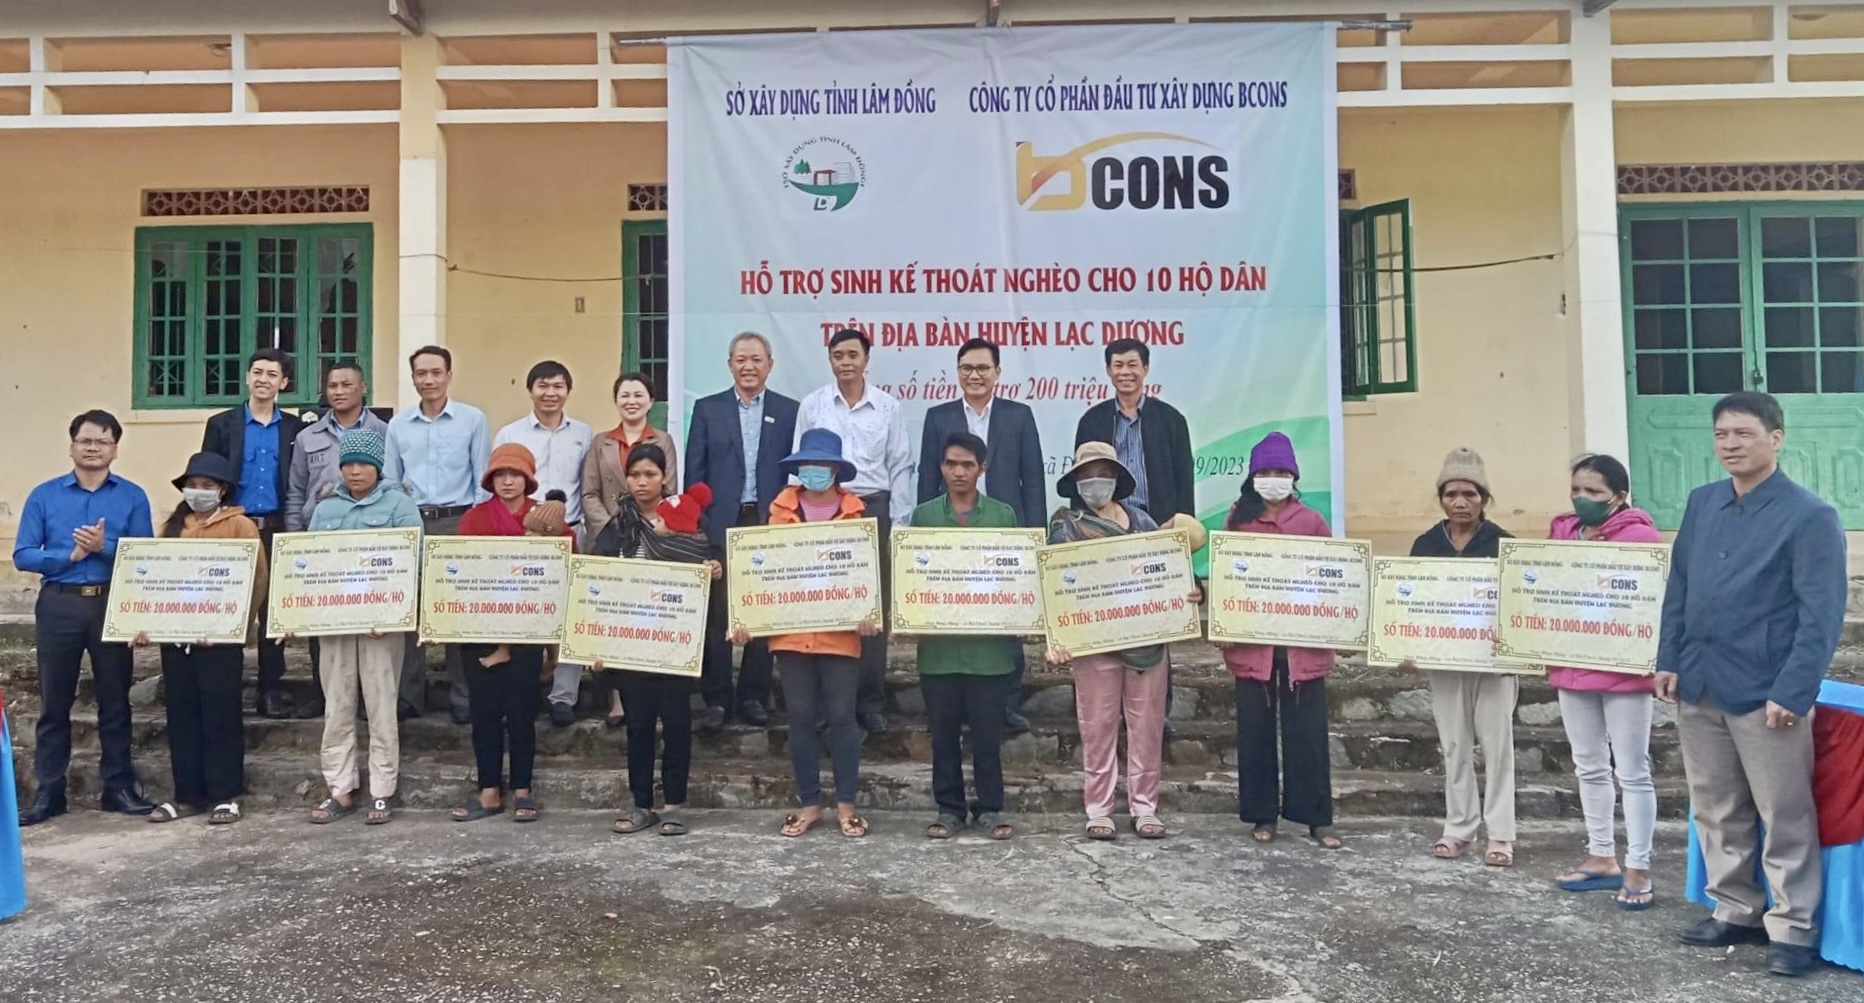 Hỗ trợ sinh kế thoát nghèo cho hộ nghèo huyện Lạc Dương